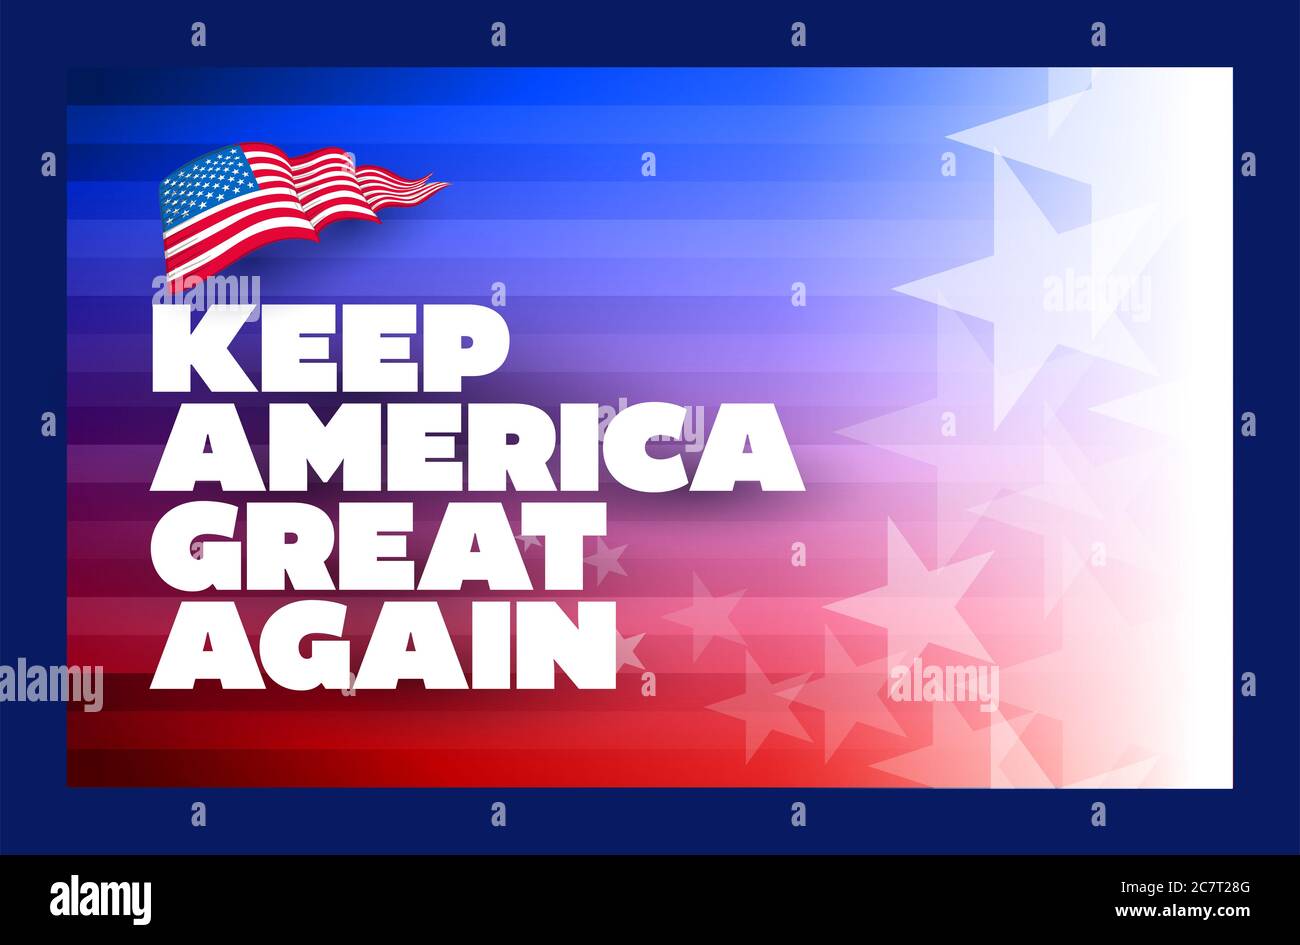 Plakat mit dem Wahlkampfmotto des Präsidenten. Halte Amerika wieder groß. Vorlage für das Konzept-Design. Typografisches Vektordesign. Politischer Wahlkampf Stockfoto